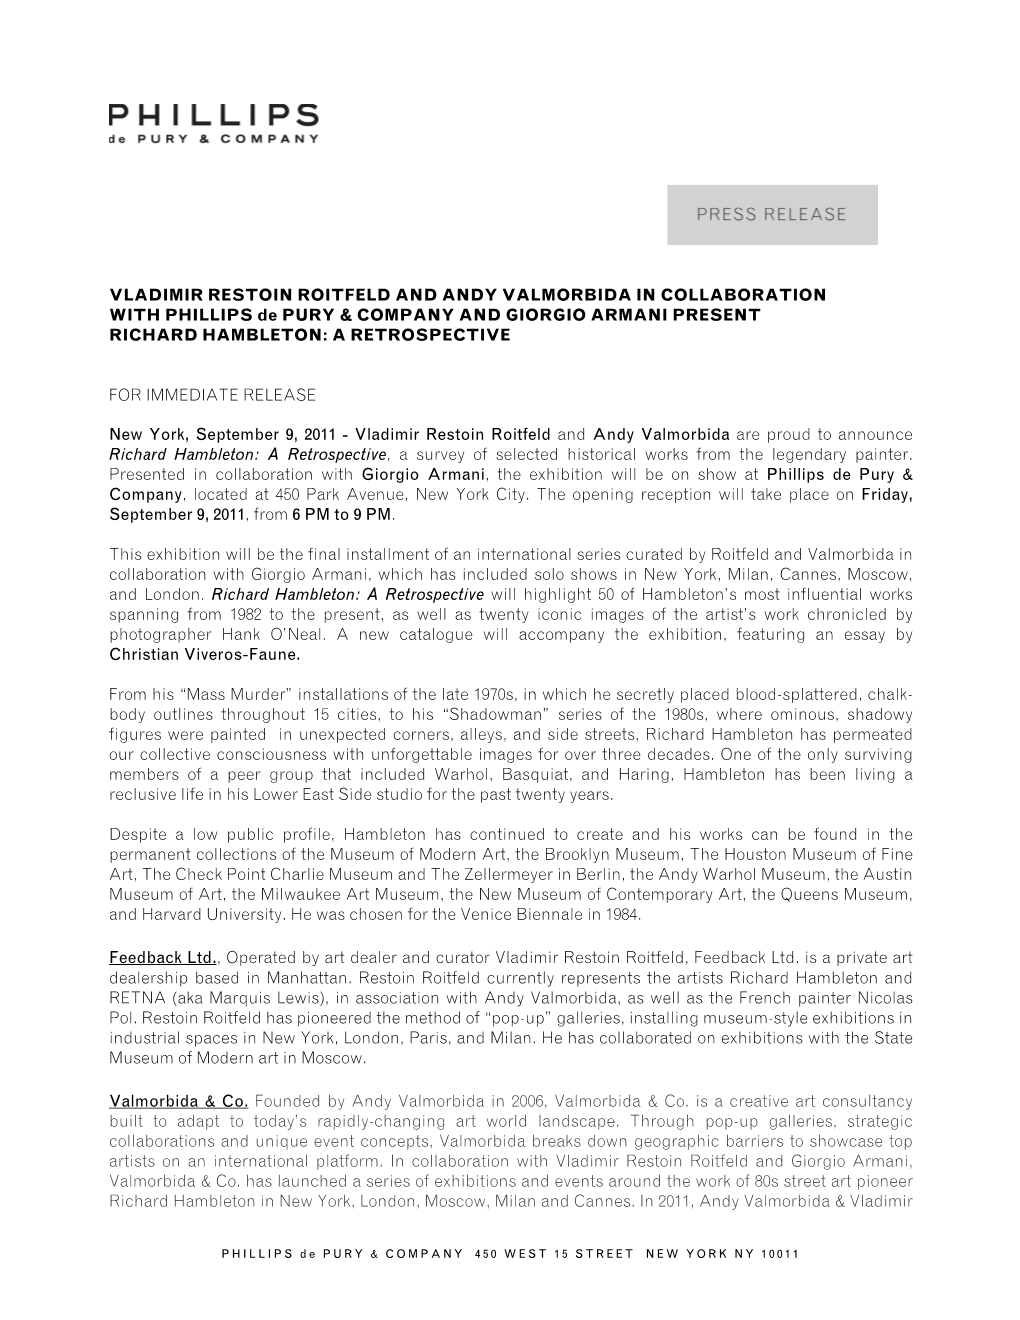 VLADIMIR RESTOIN ROITFELD and ANDY VALMORBIDA in COLLABORATION with PHILLIPS De PURY & COMPANY and GIORGIO ARMANI PRESENT RICHARD HAMBLETON: a RETROSPECTIVE